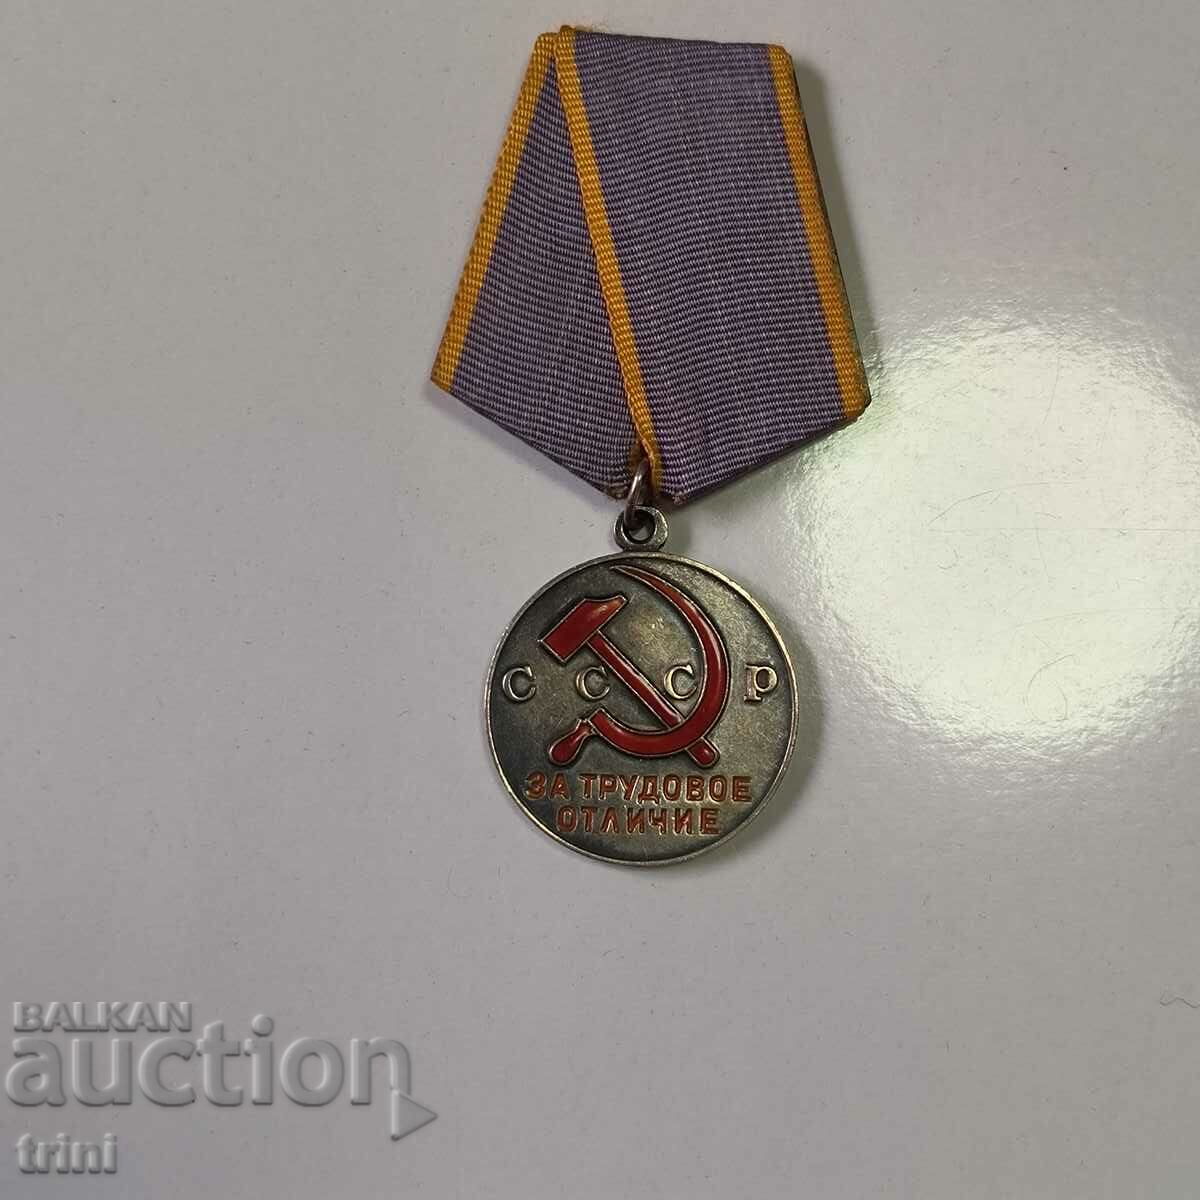 Medalia URSS pentru distincția muncii, rară